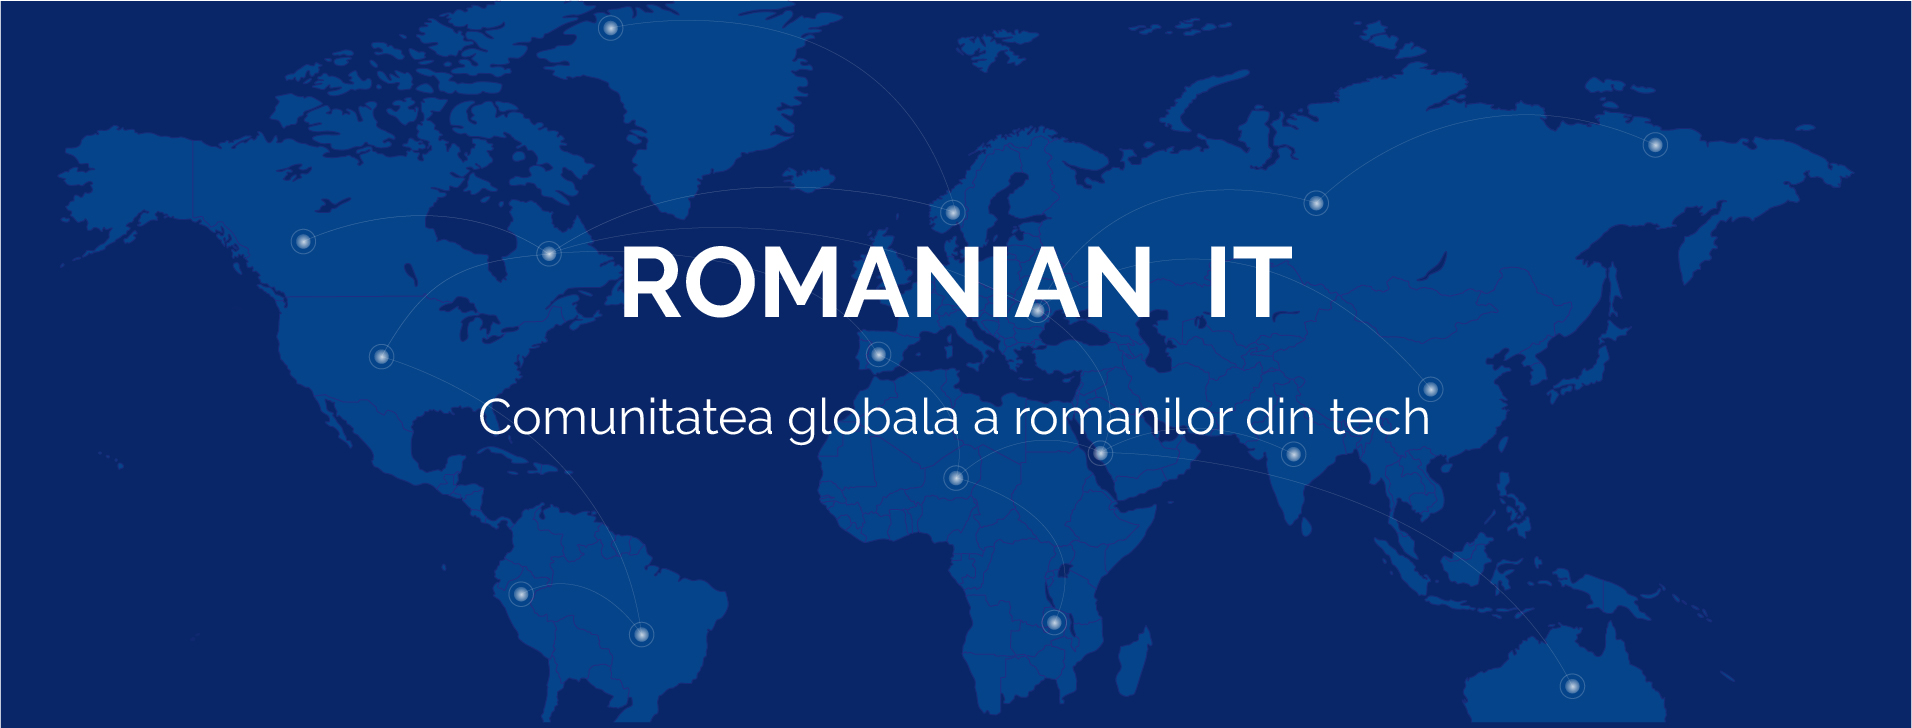 romanian-it